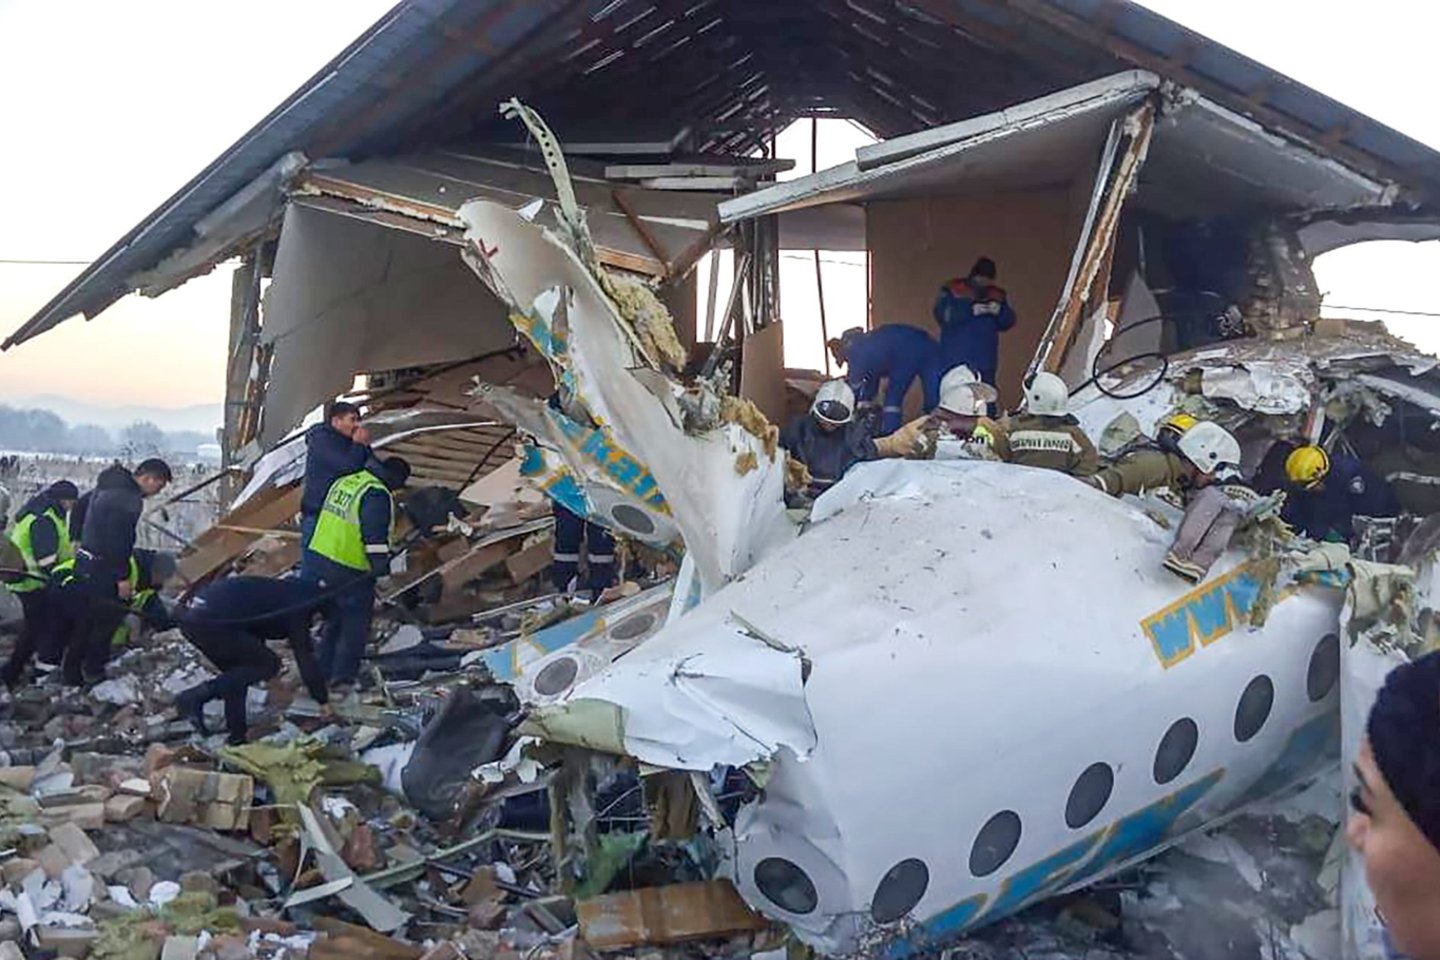  Ankstyvą penktadienio rytą Kazachstane nukrito lėktuvas, kuriuo skrido 100 žmonių. Kaip praneša BBC, lėktuvas nukrito vos pakilęs iš oro uosto Almatoje. Gelbėjimo tarnybos praneša apie 15 žmonių žūtį.  <br>AFP/Scanpix nuotr.